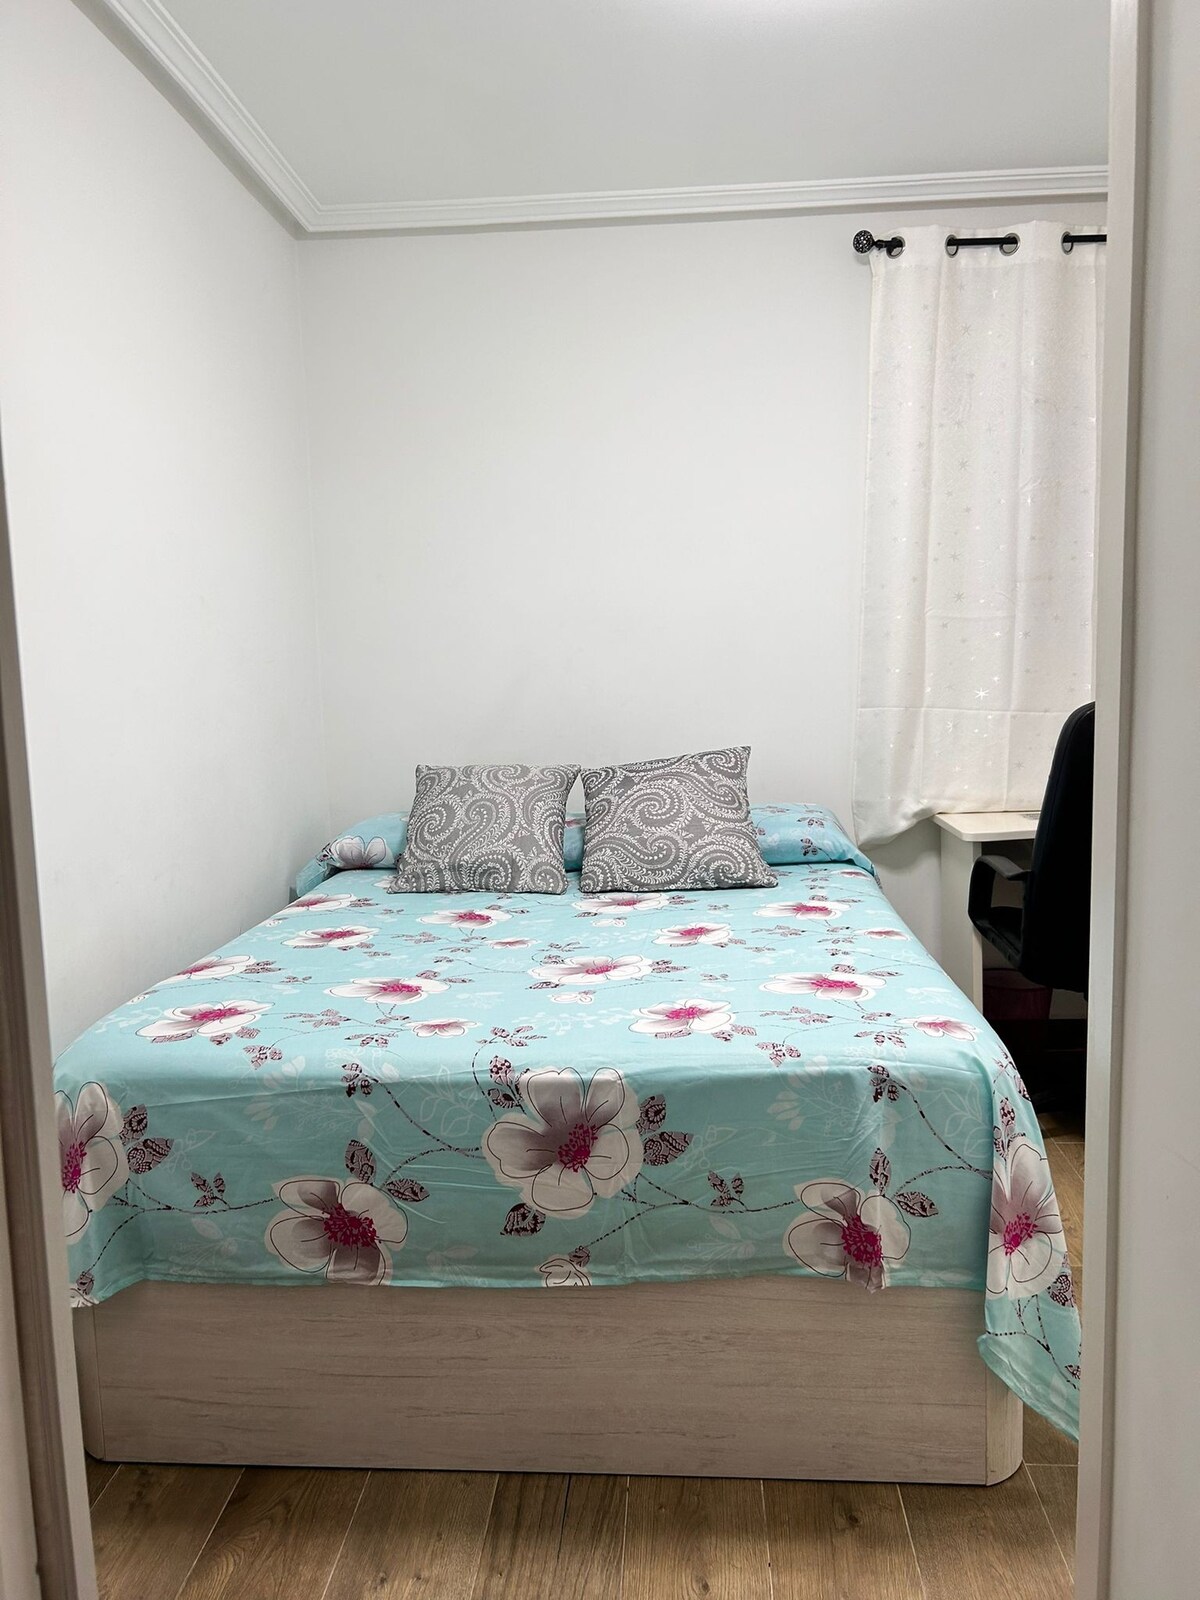 公寓位于演讲中心，距离RENFE仅两分钟路程，有双人卧室、起居室、厨房和卫生间，非常适合舒适安静的情侣入住。